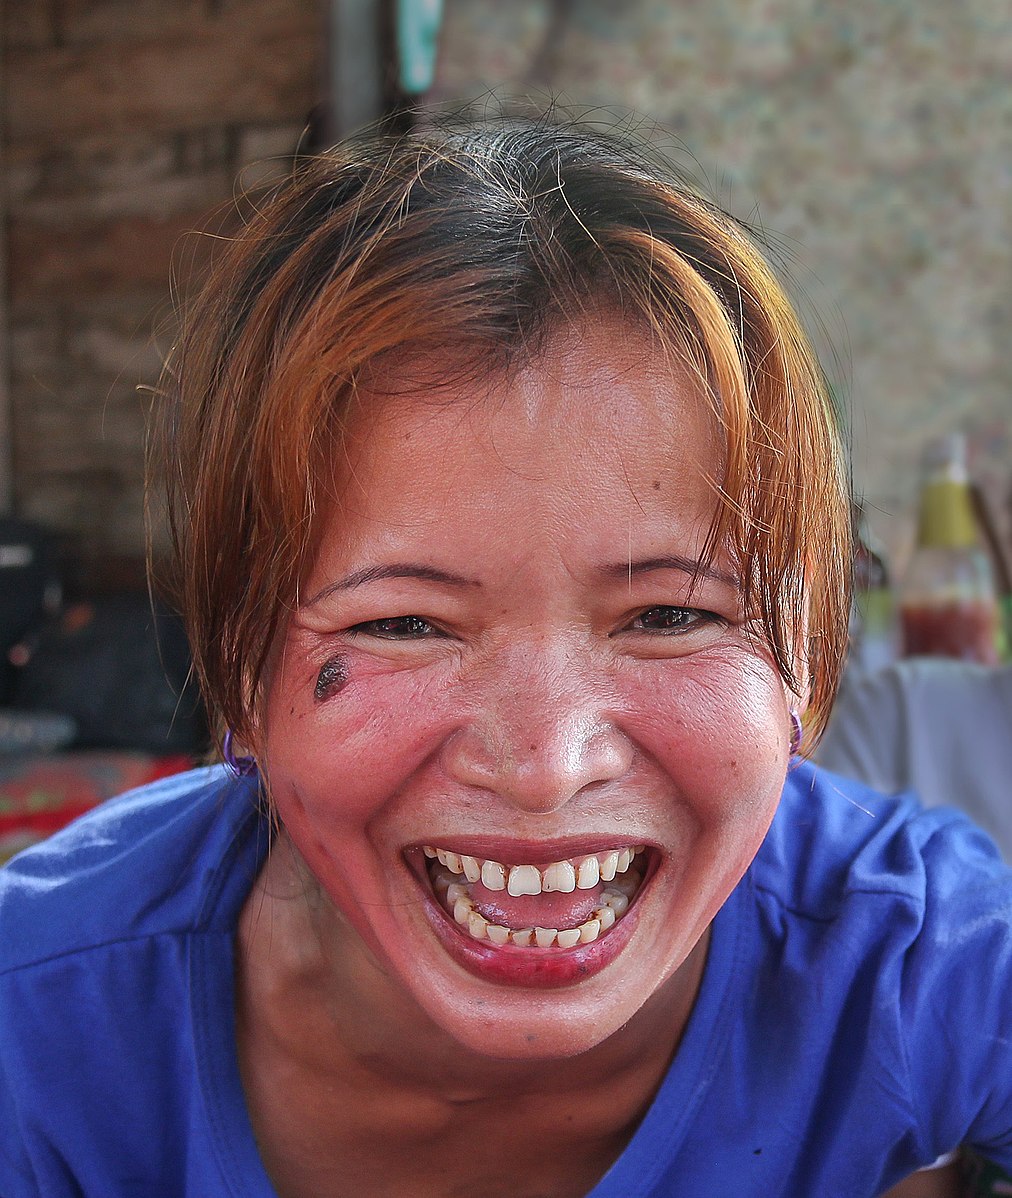 Une femme portant un t-shirt bleu foncé ri à gorge déployée en regardant droit devant elle.